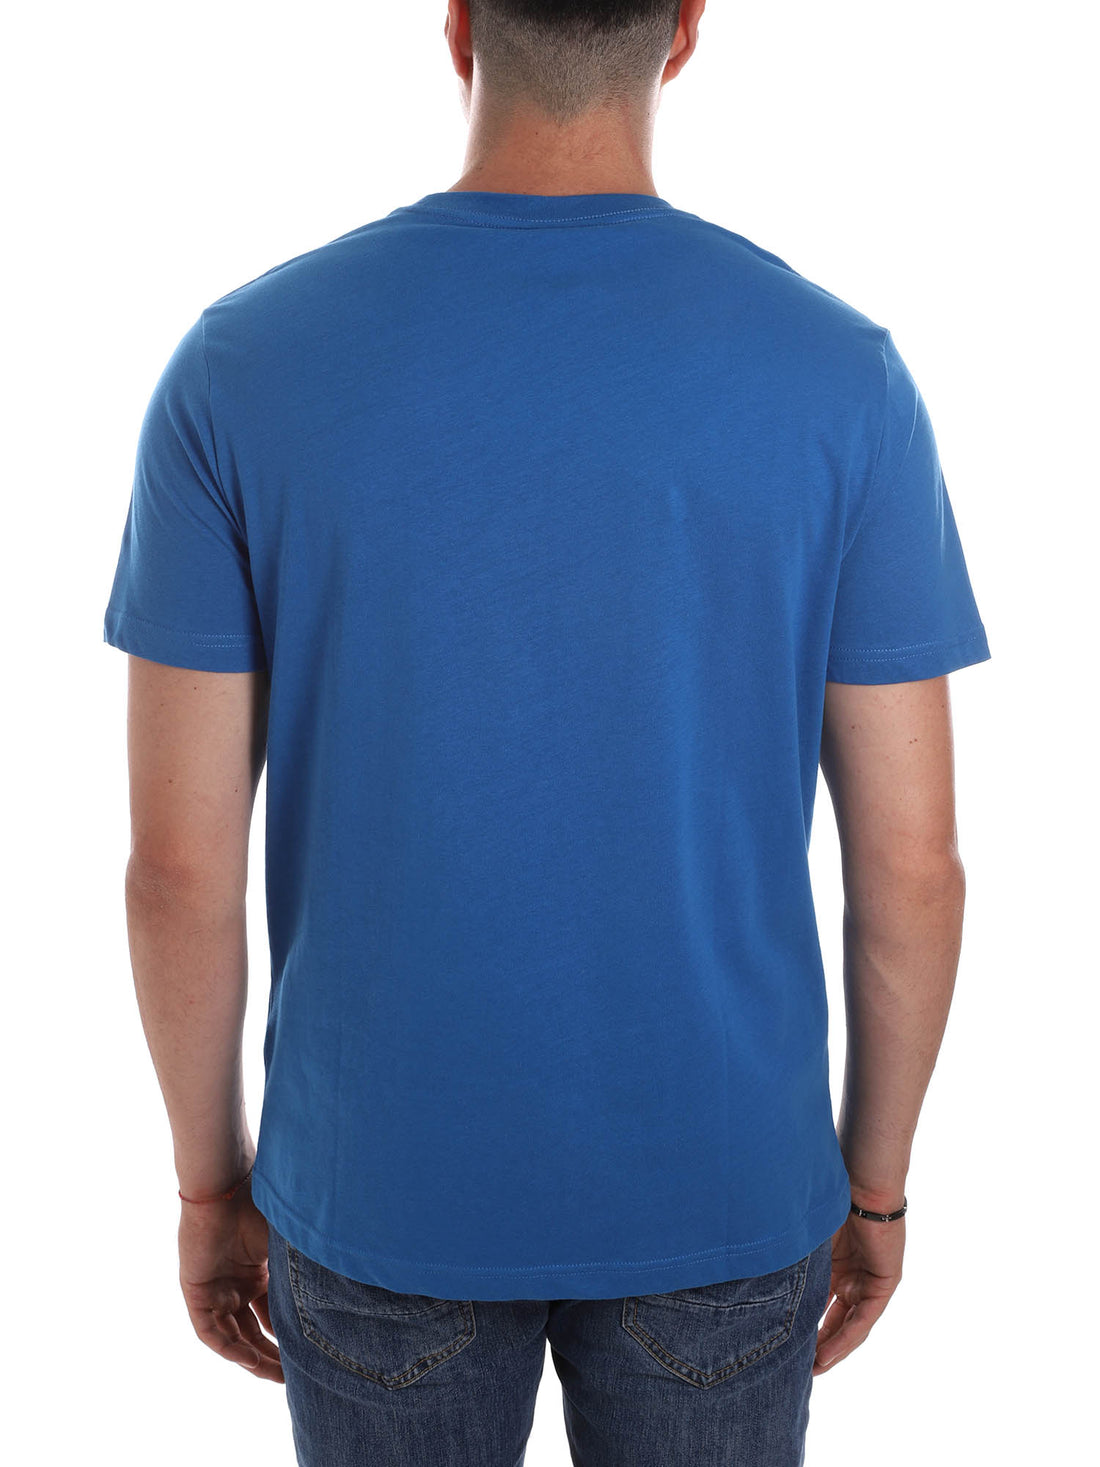 T-shirt Bluette Armata Di Mare